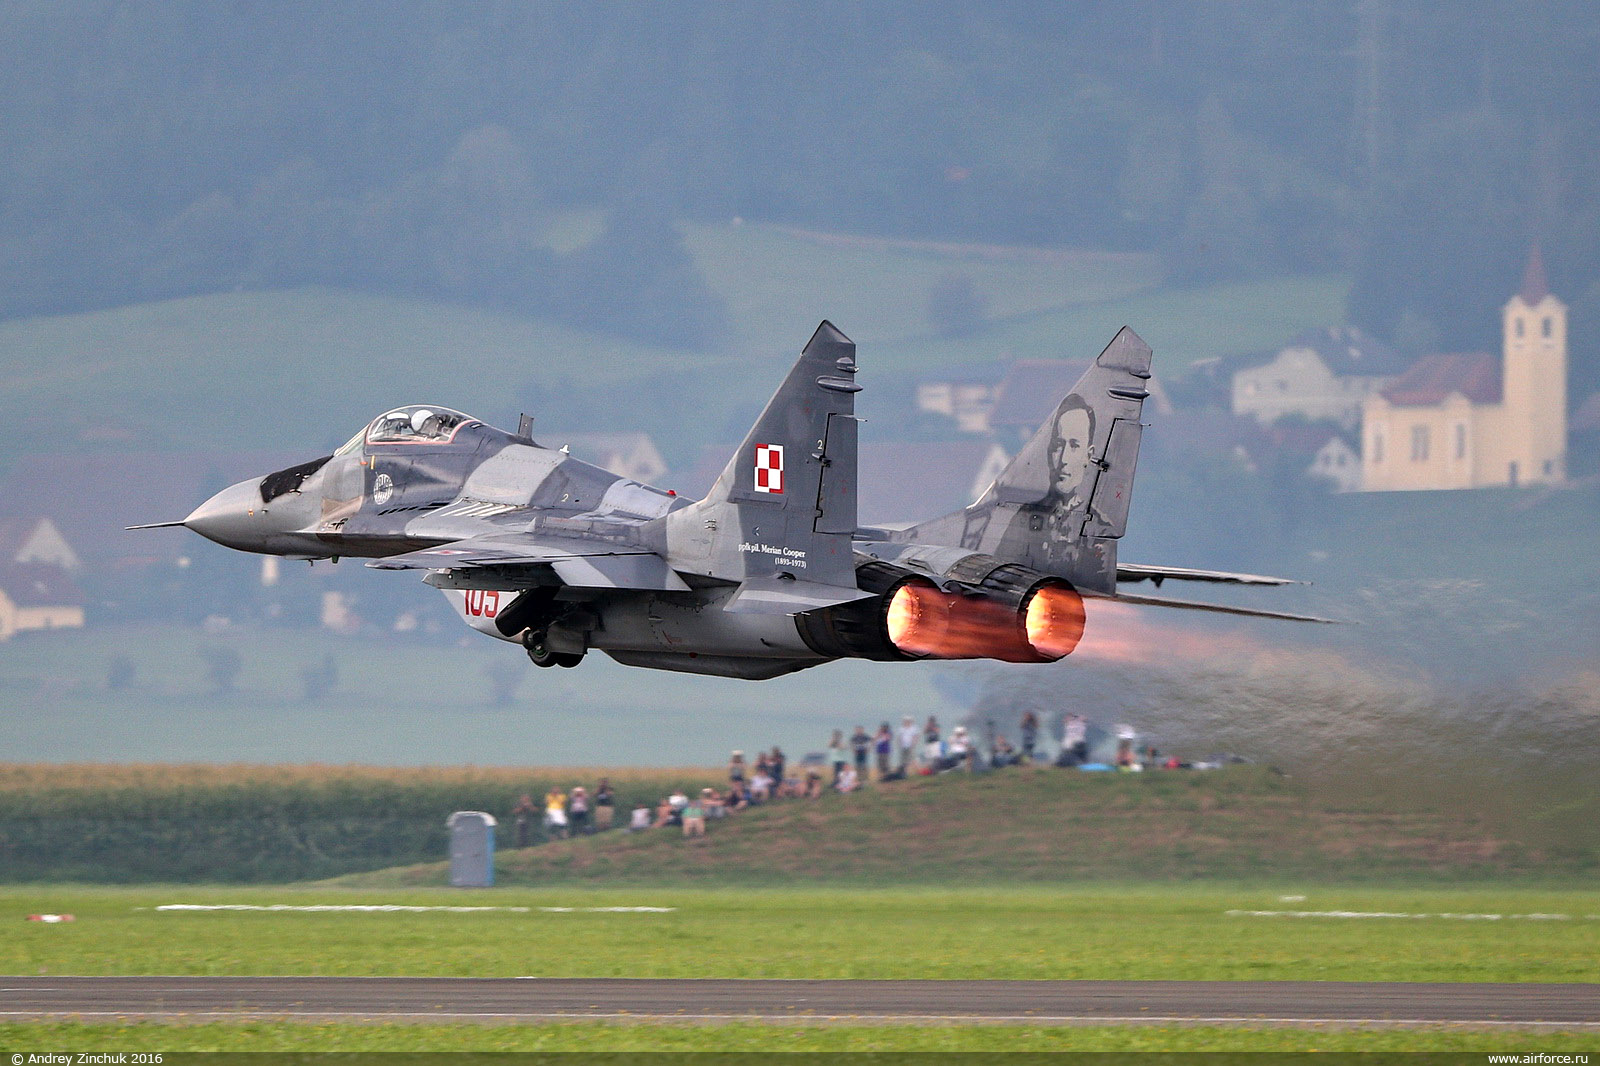 Польща запросила у Німеччини дозвіл на передачу Україні винищувачів МіГ-29 – ЗМІ